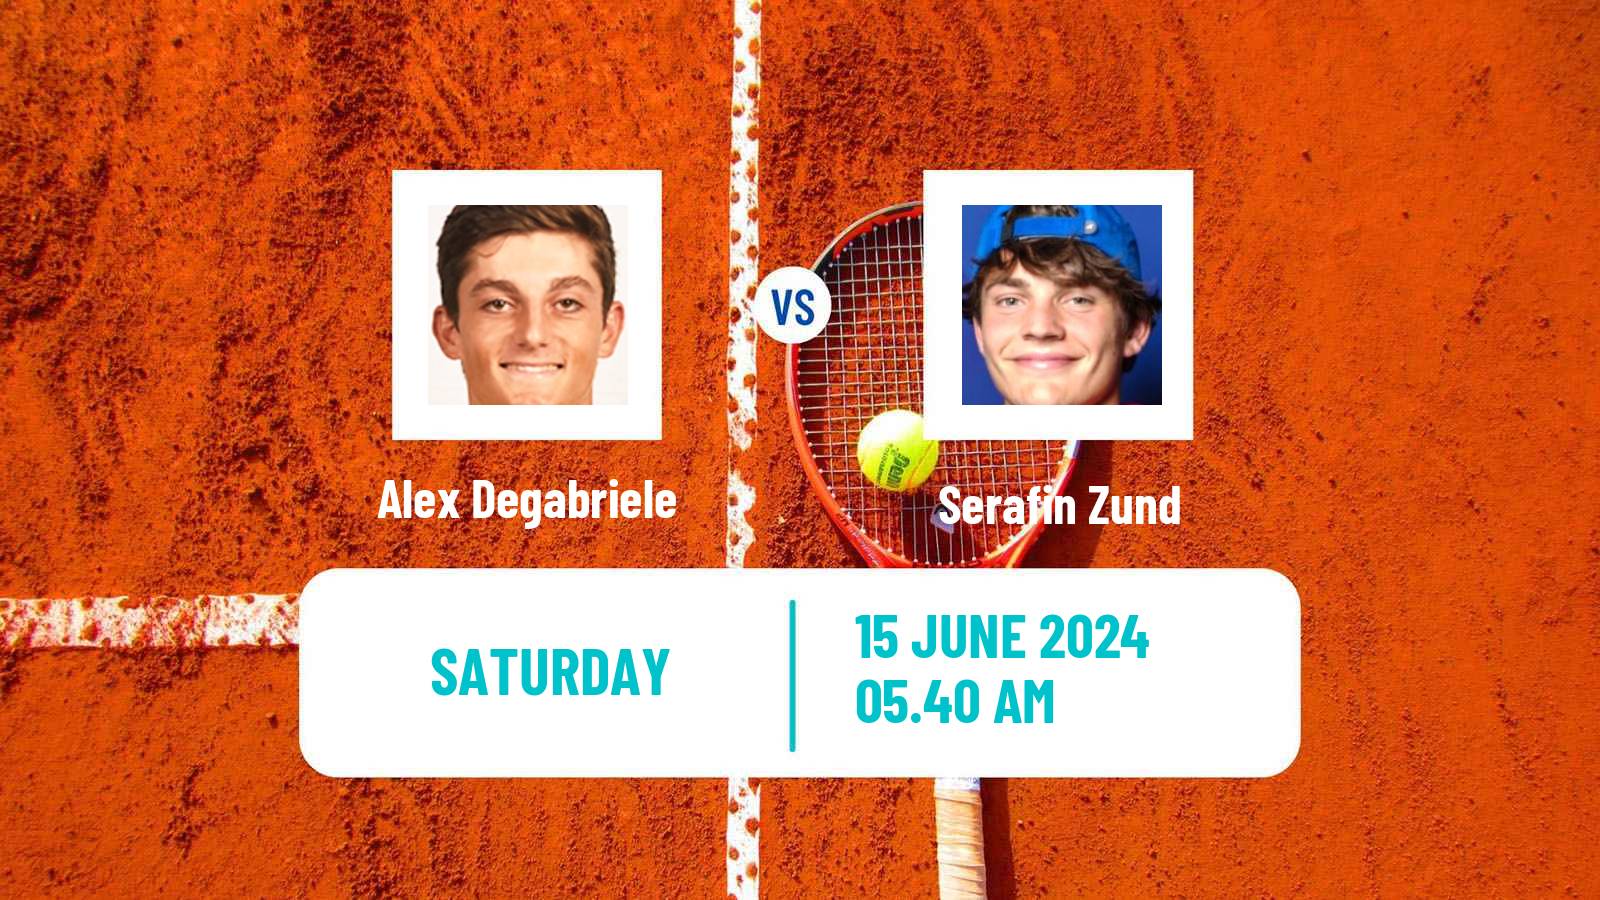 Tennis Davis Cup Group IV Alex Degabriele - Serafin Zund